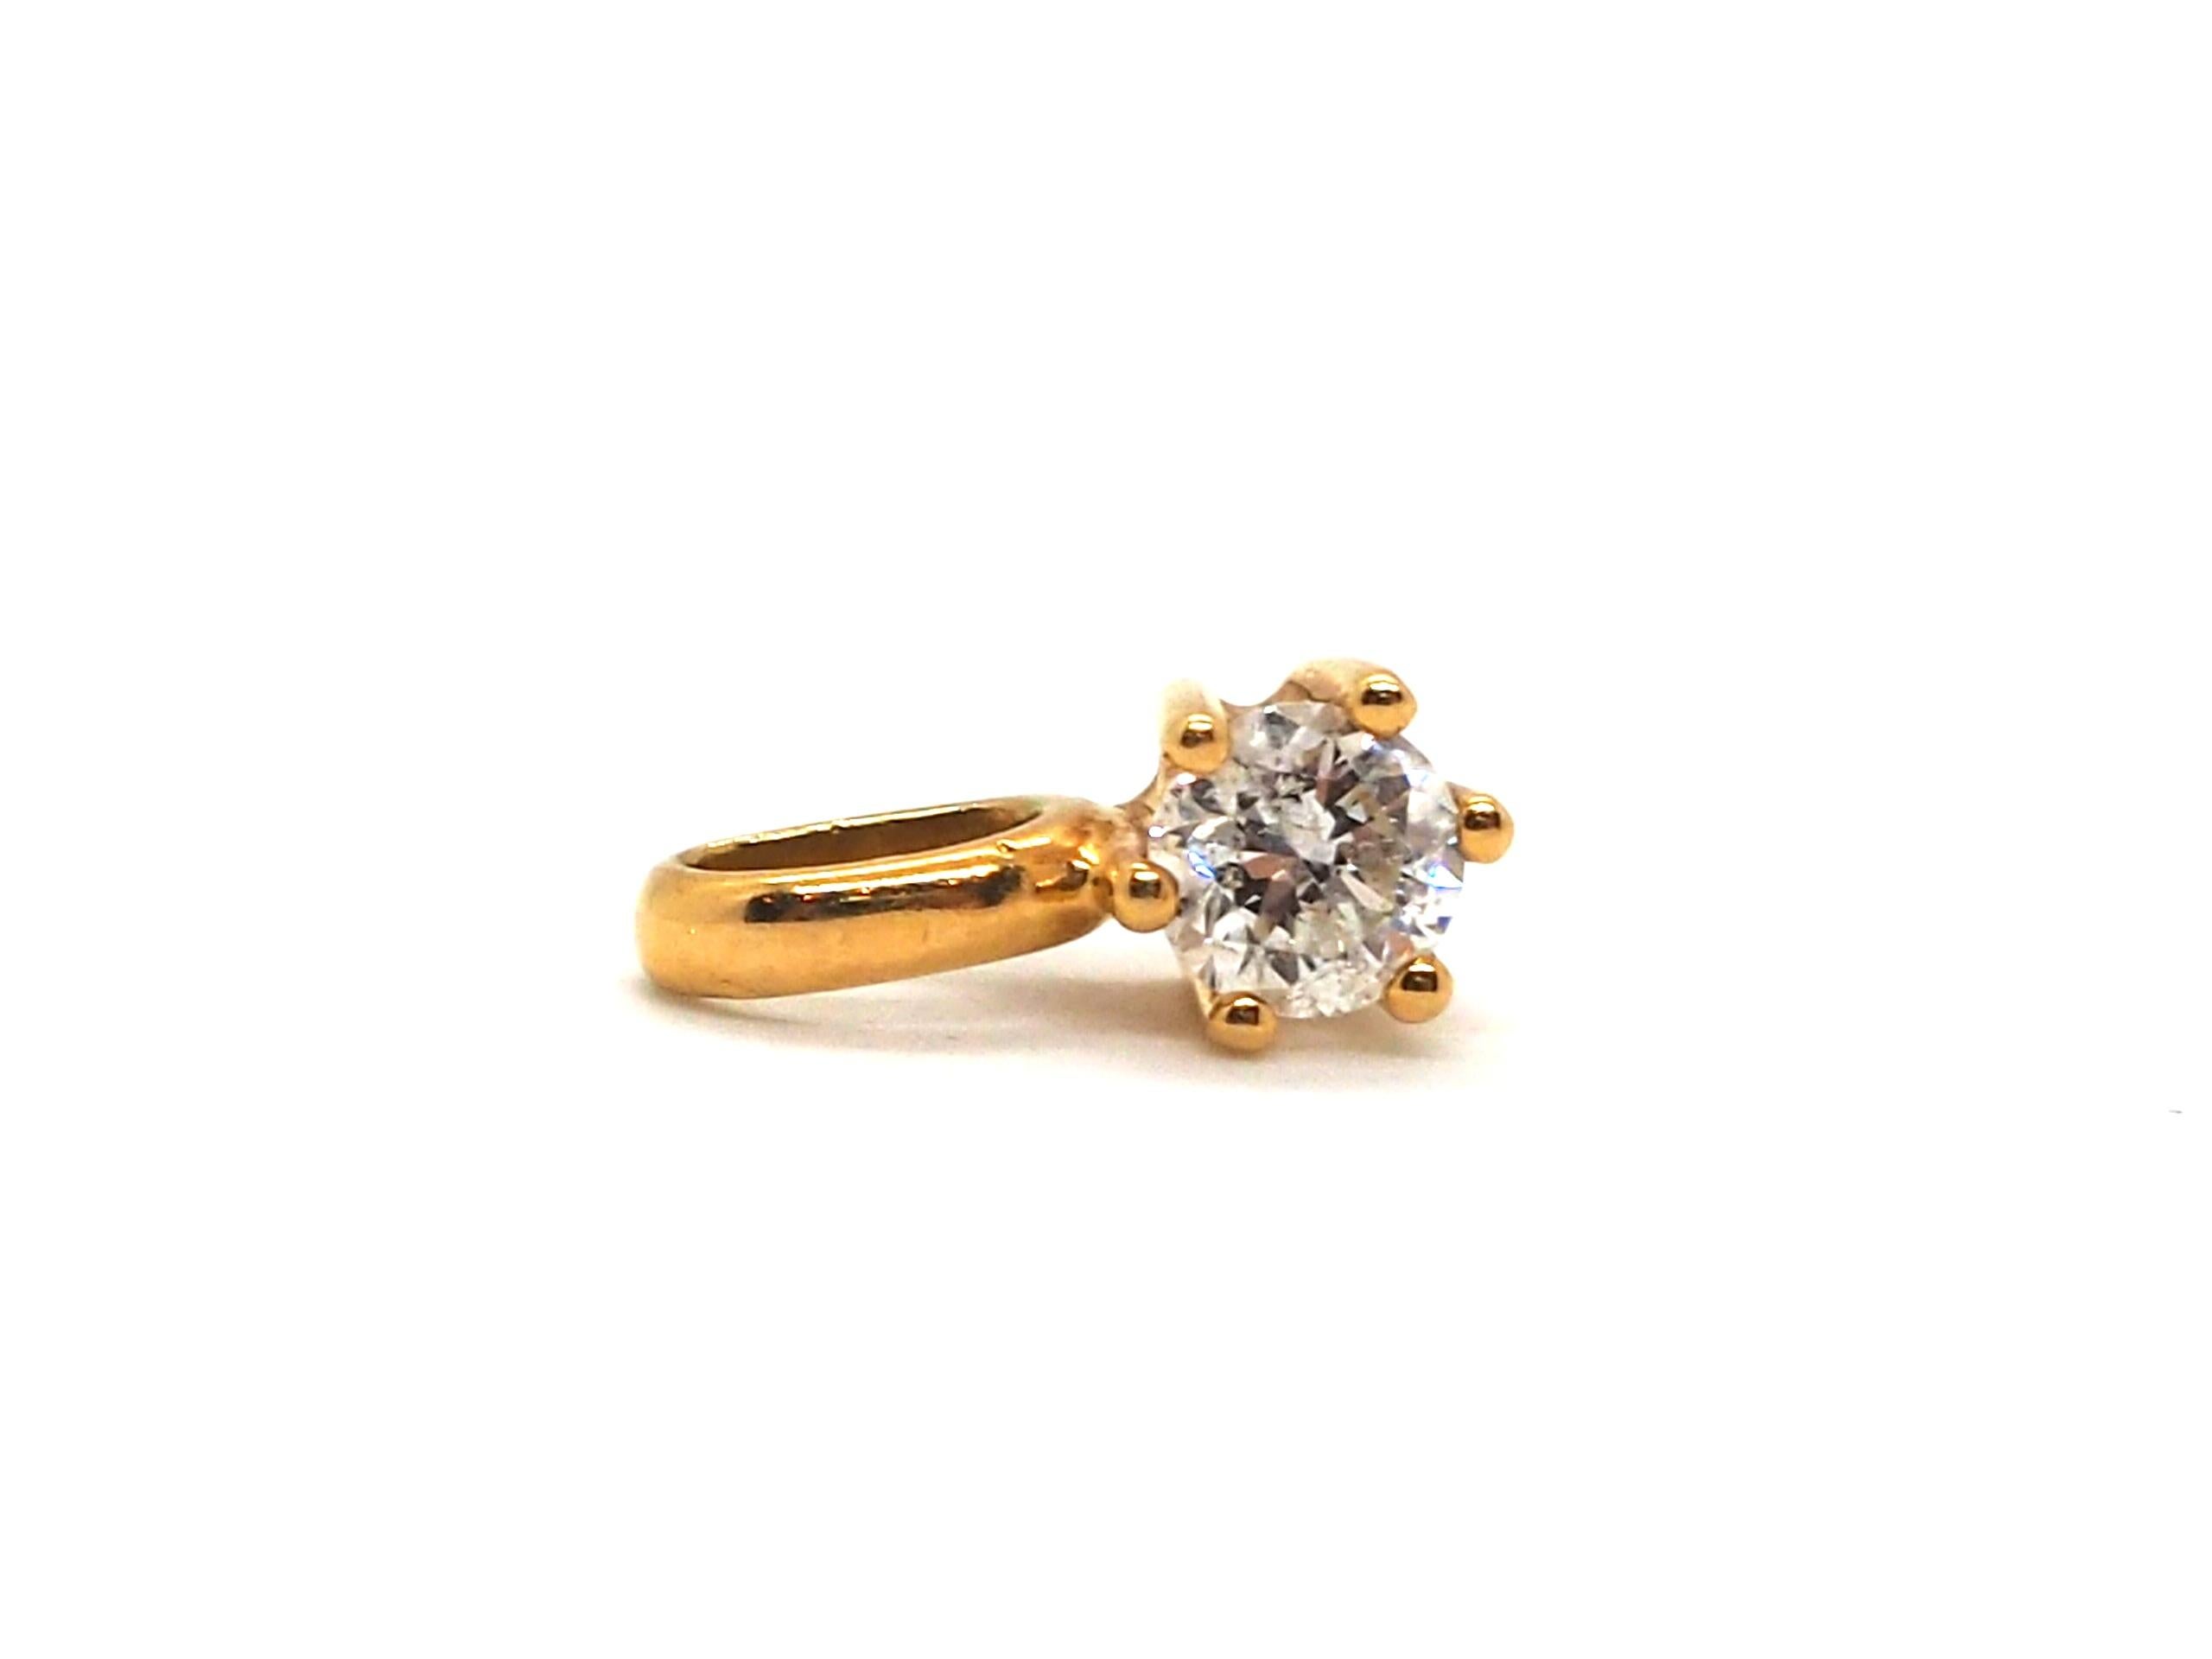 Mettez en valeur votre élégance avec ce petit pendentif exquis réalisé en or jaune 18 carats.
Orné d'un diamant éblouissant pesant 0,4 carat, ce pendentif respire la sophistication et le charme. 

Son design délicat ajoute une touche de luxe à tout